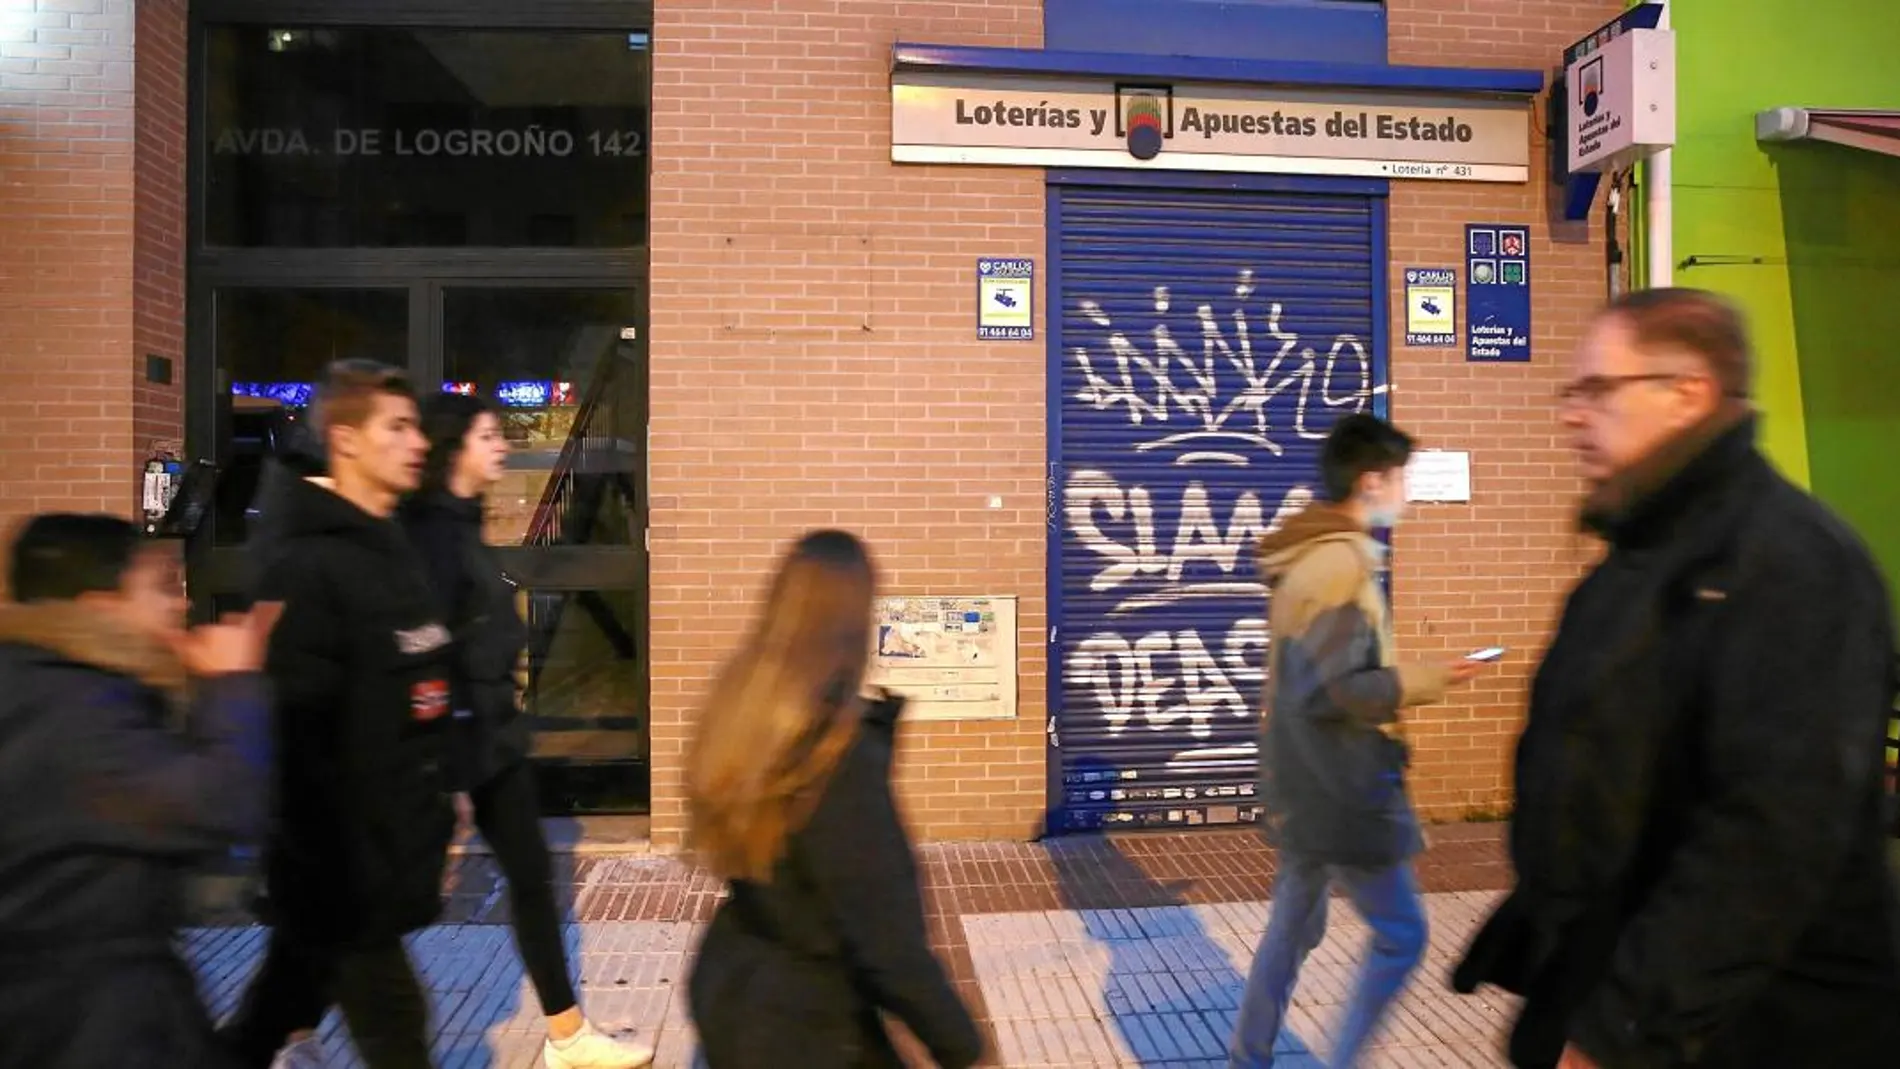 La administración de Barajas, en la Avenida de Logroño, fue una de las damnificadas